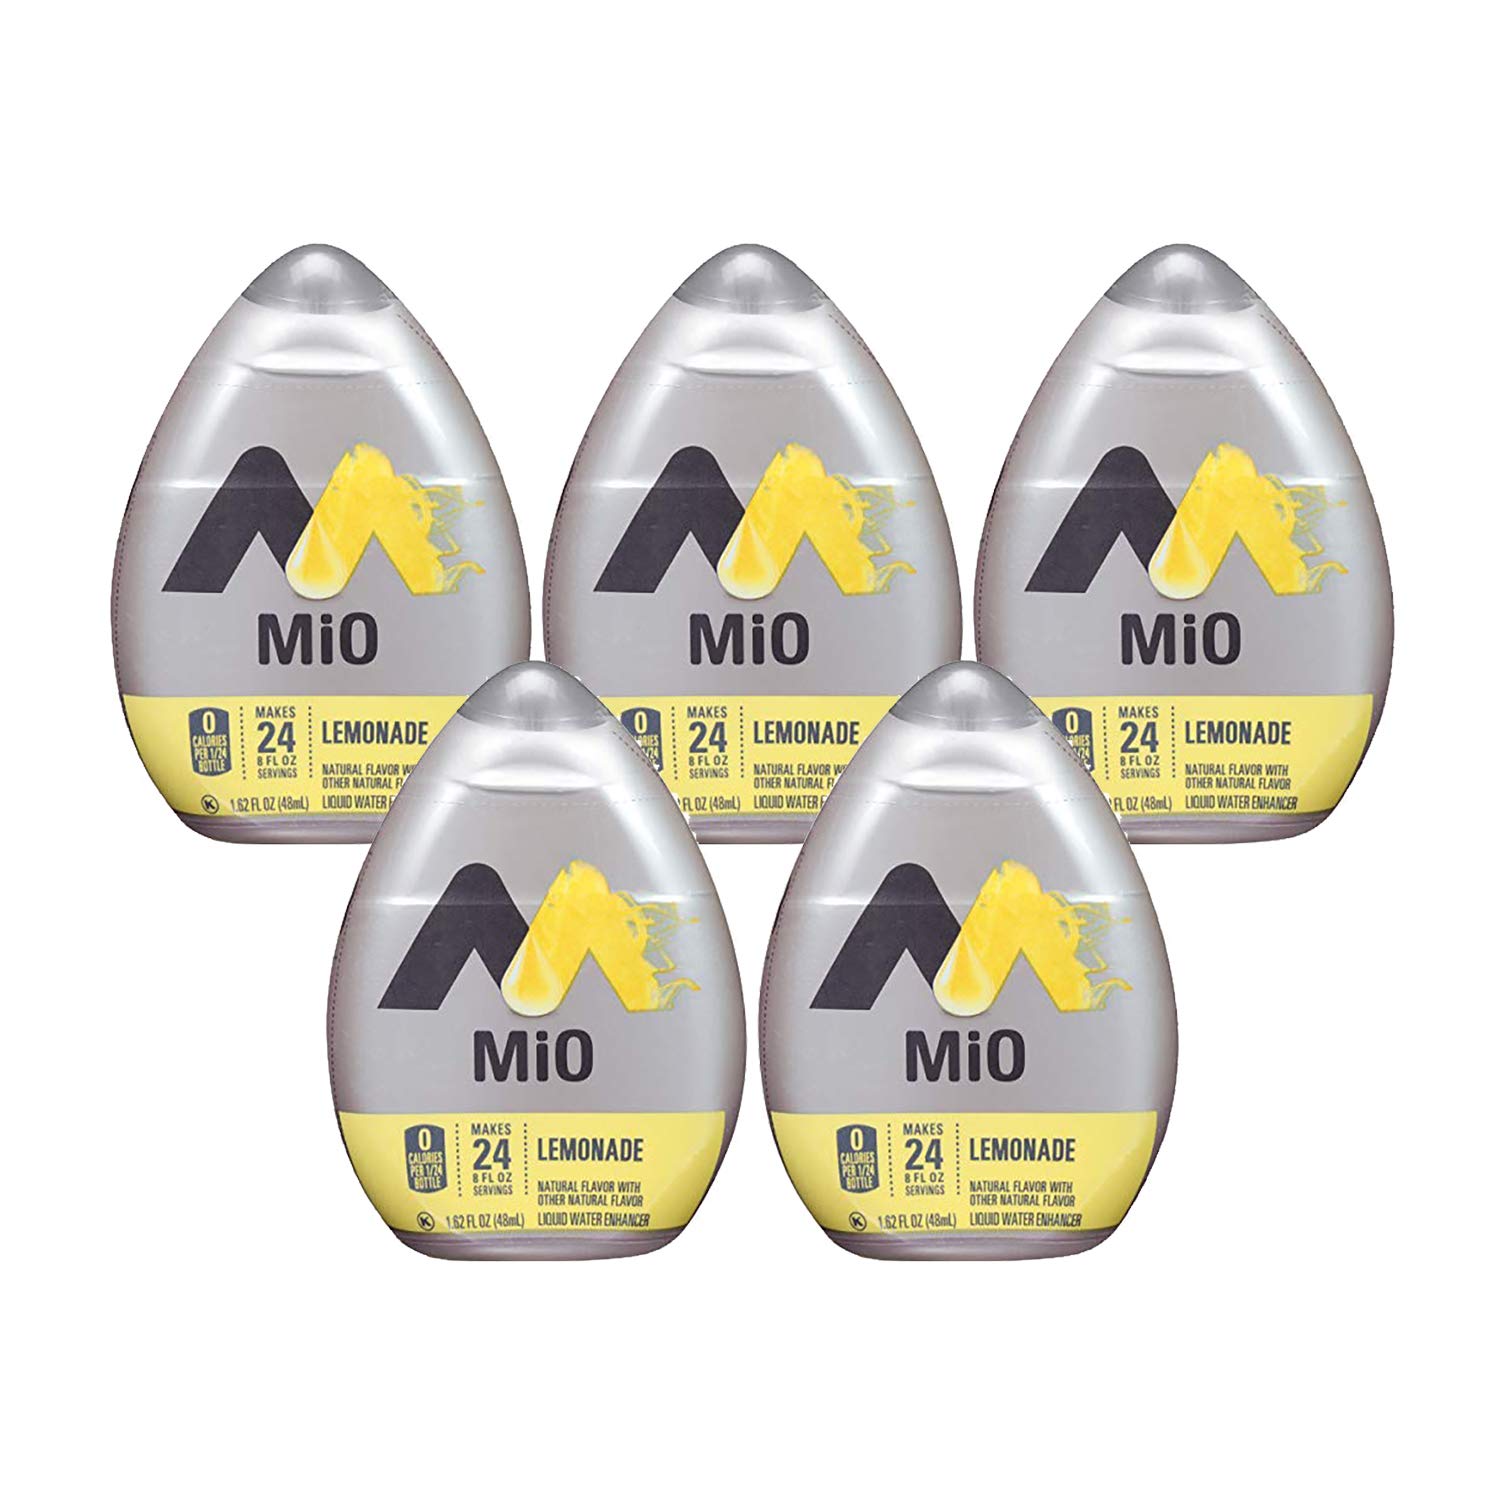 MiO Liquid Water Enhancer - Lemonade, makes 24 servings + Vitamins, 1.62 oz each, (Pack of 5)